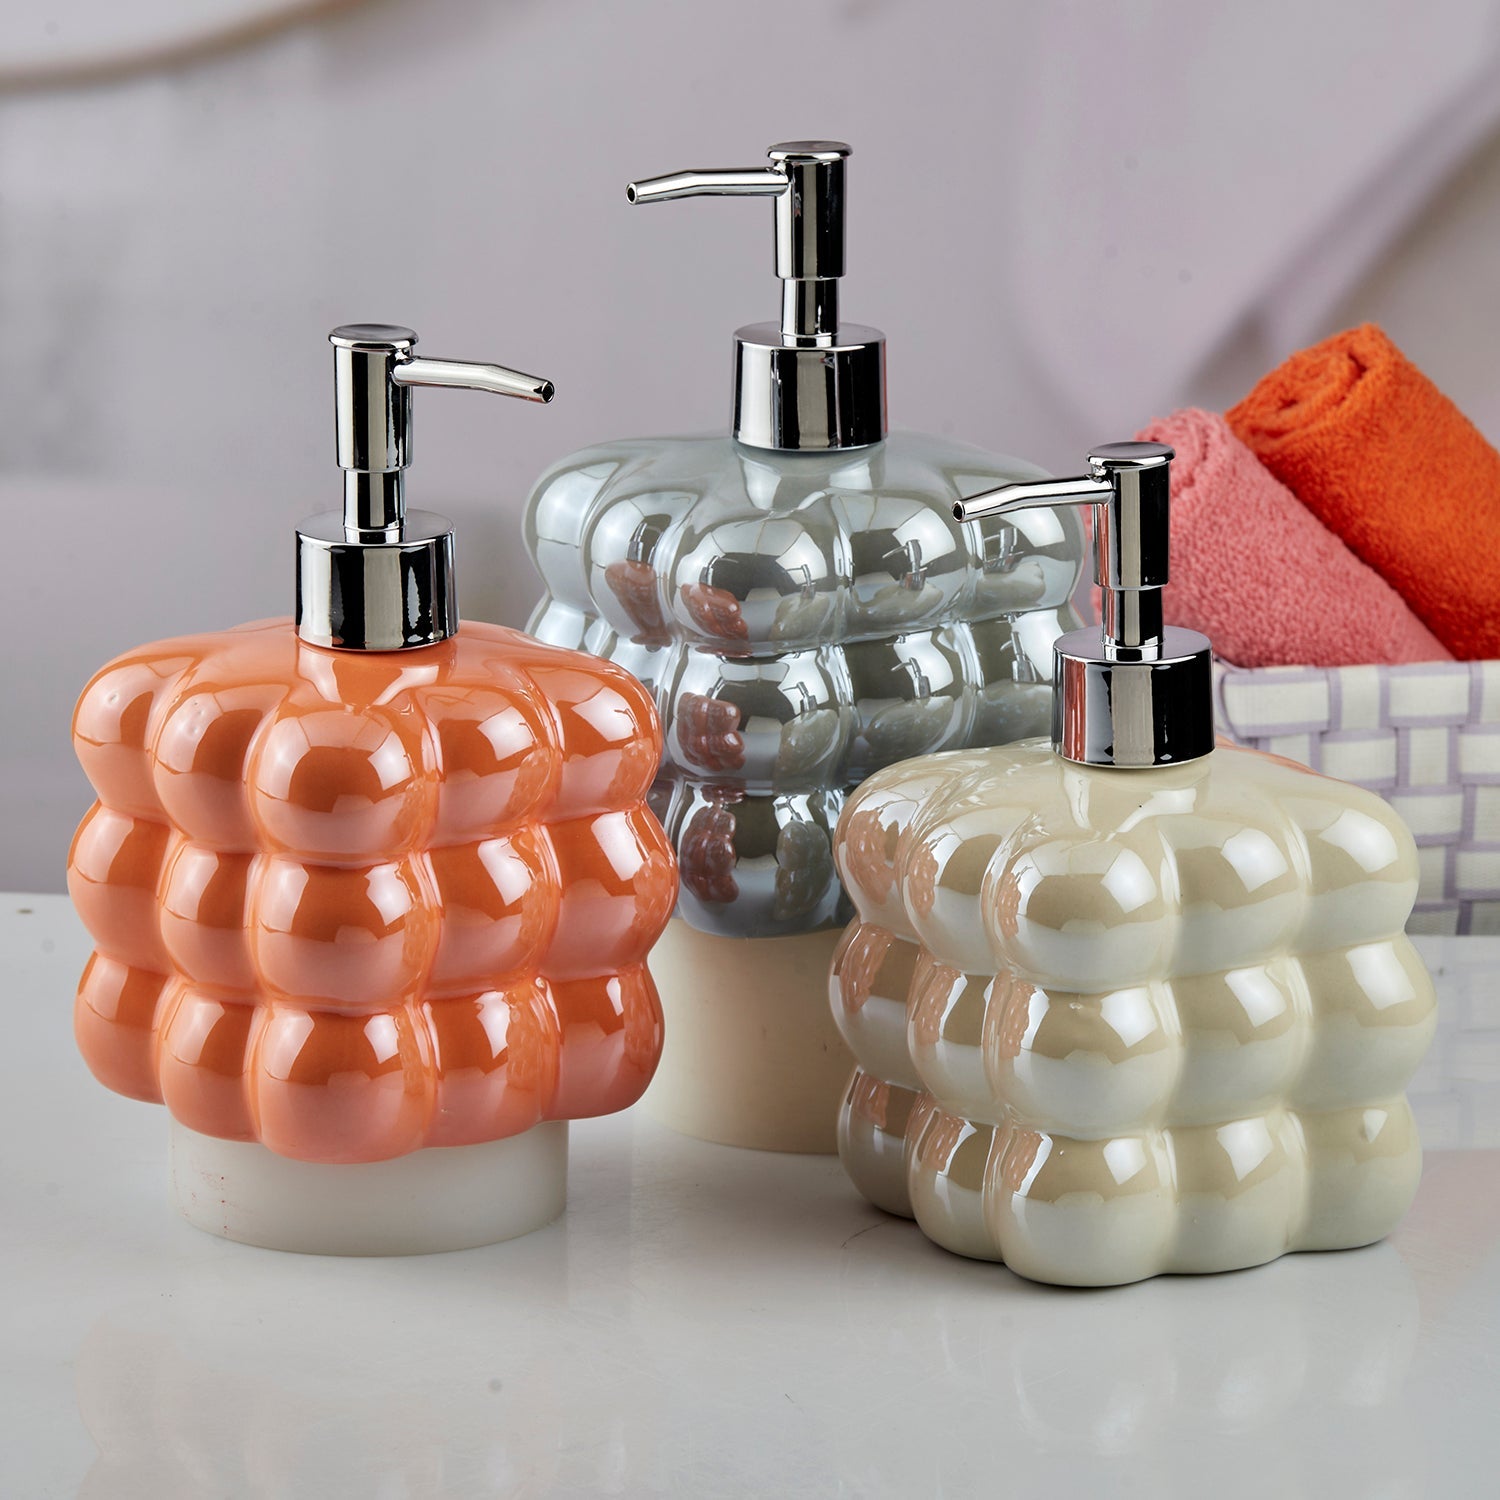 Ceramic Soap Dispenser liquid handwash pump for Bathroom, Set of 1, Beige (10610)